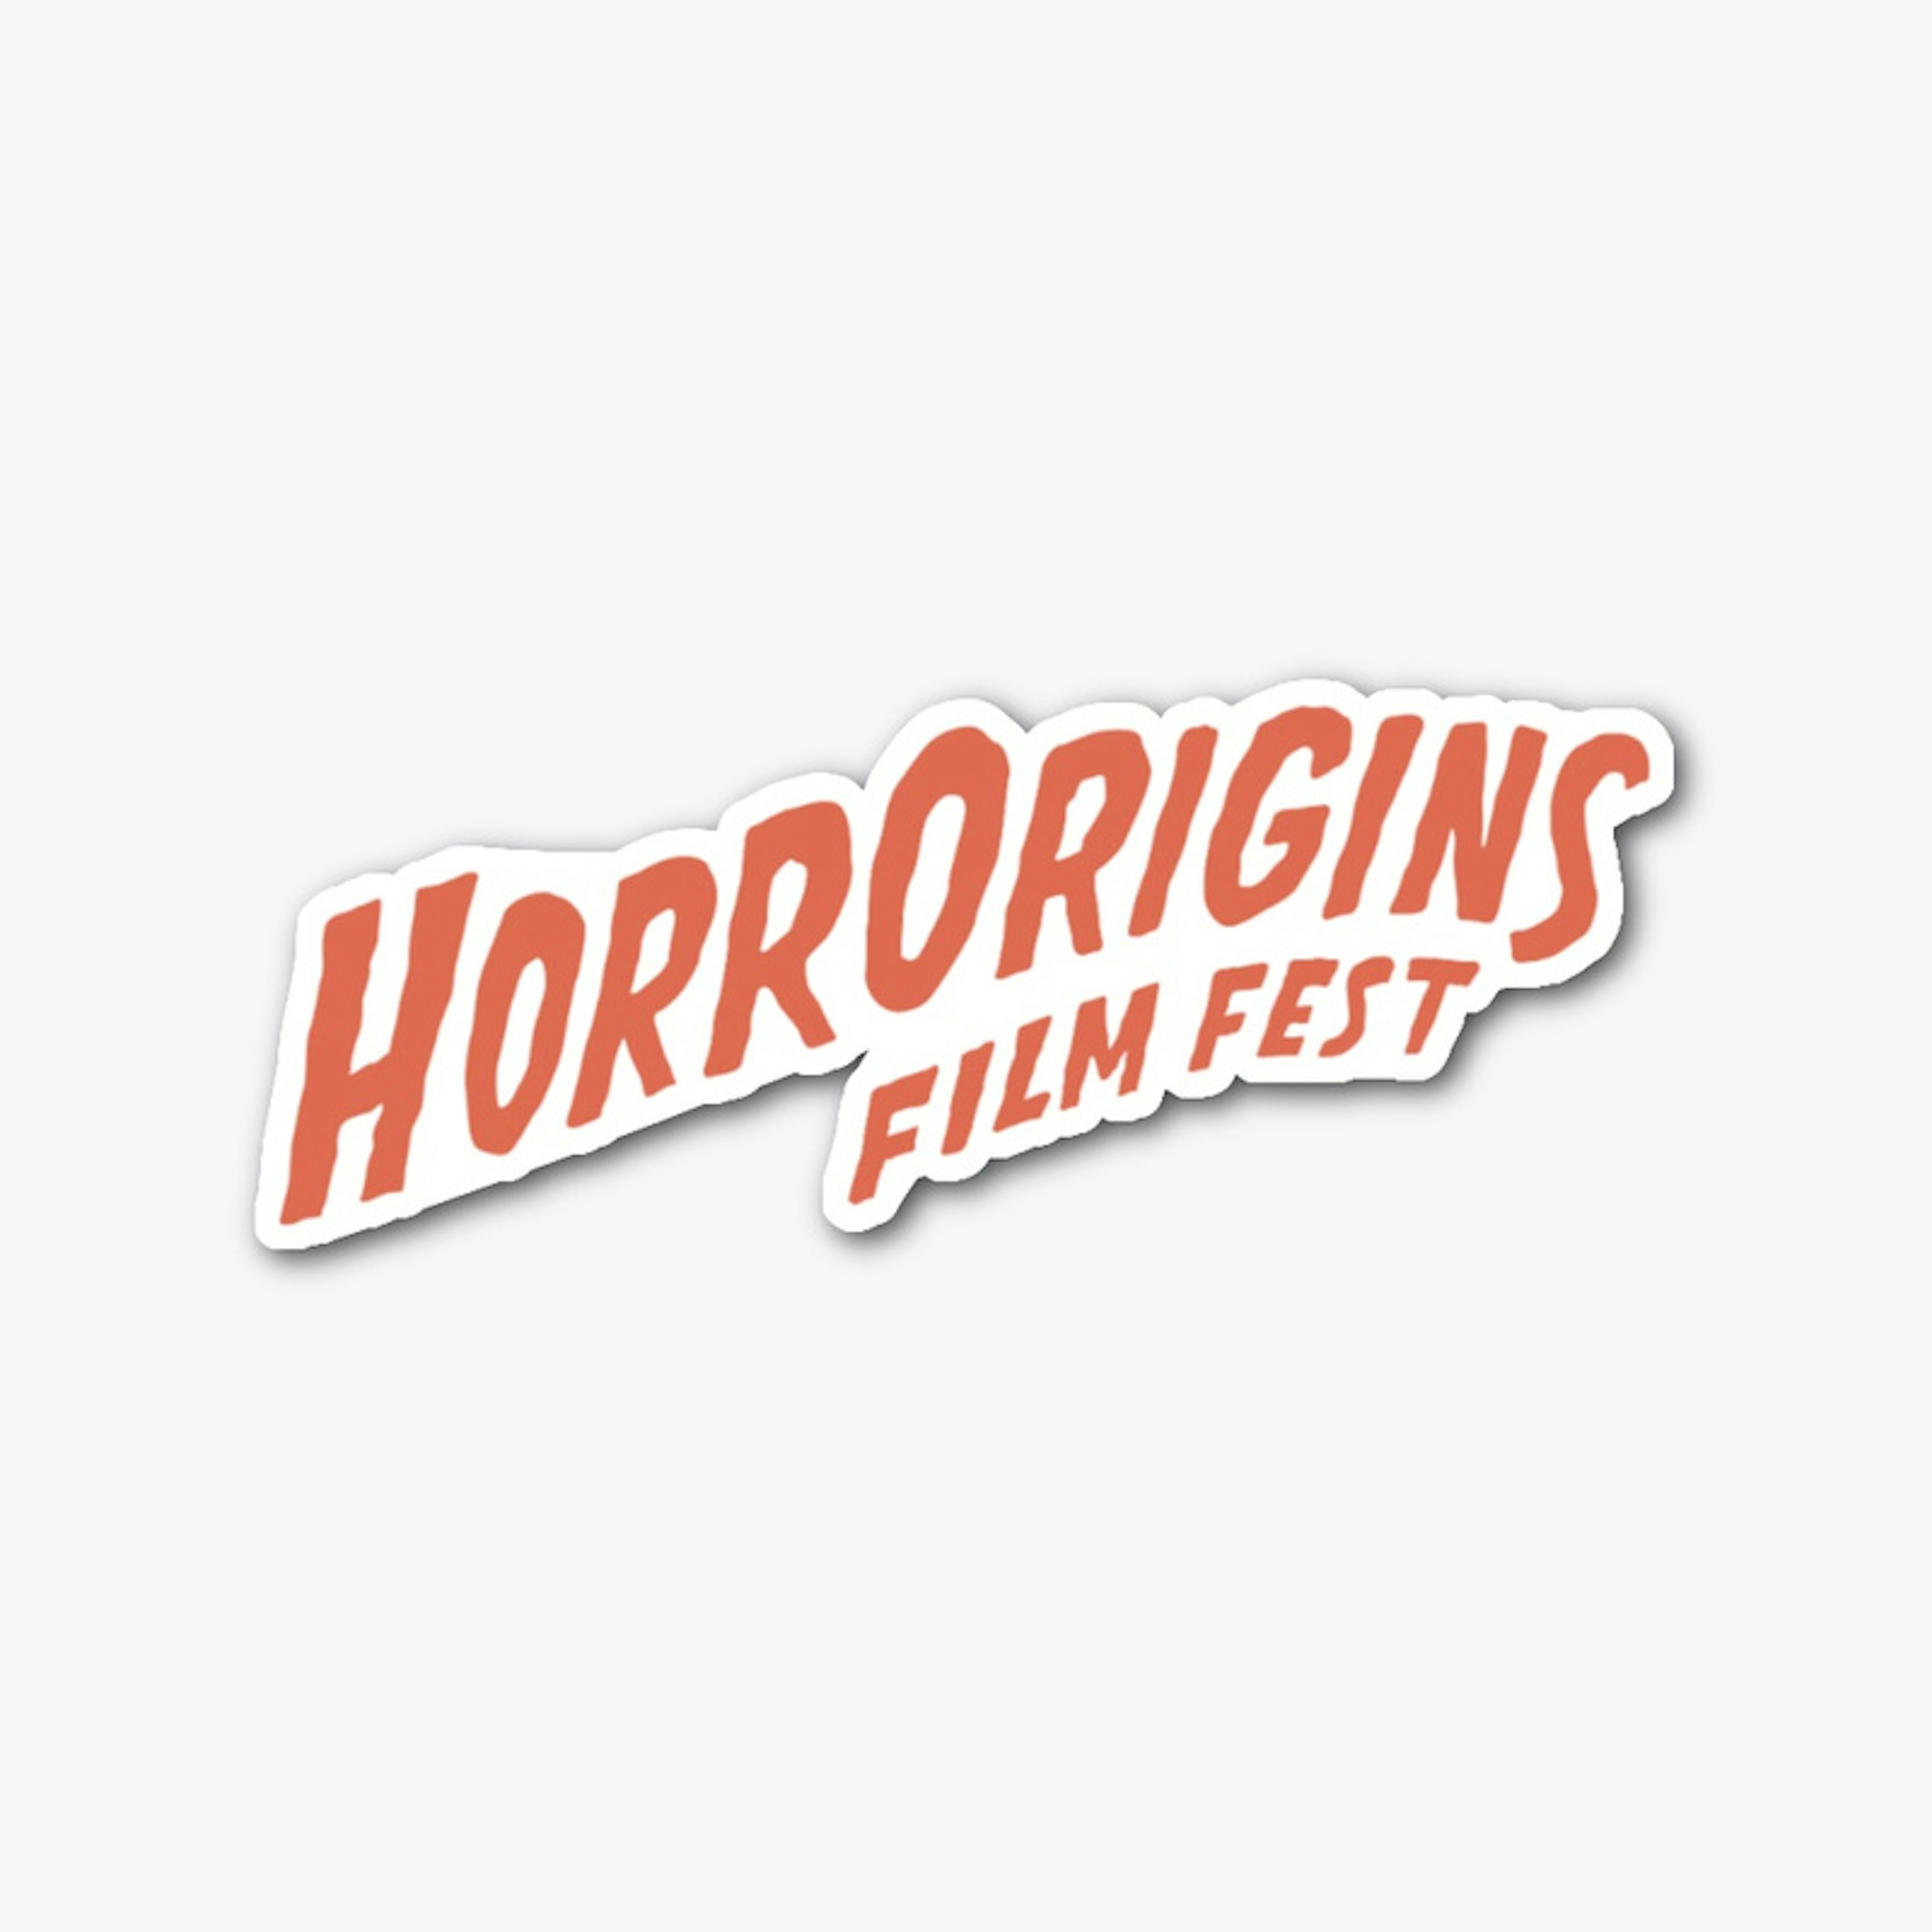 HorrOrigins Film Fest Die-cut Sticker